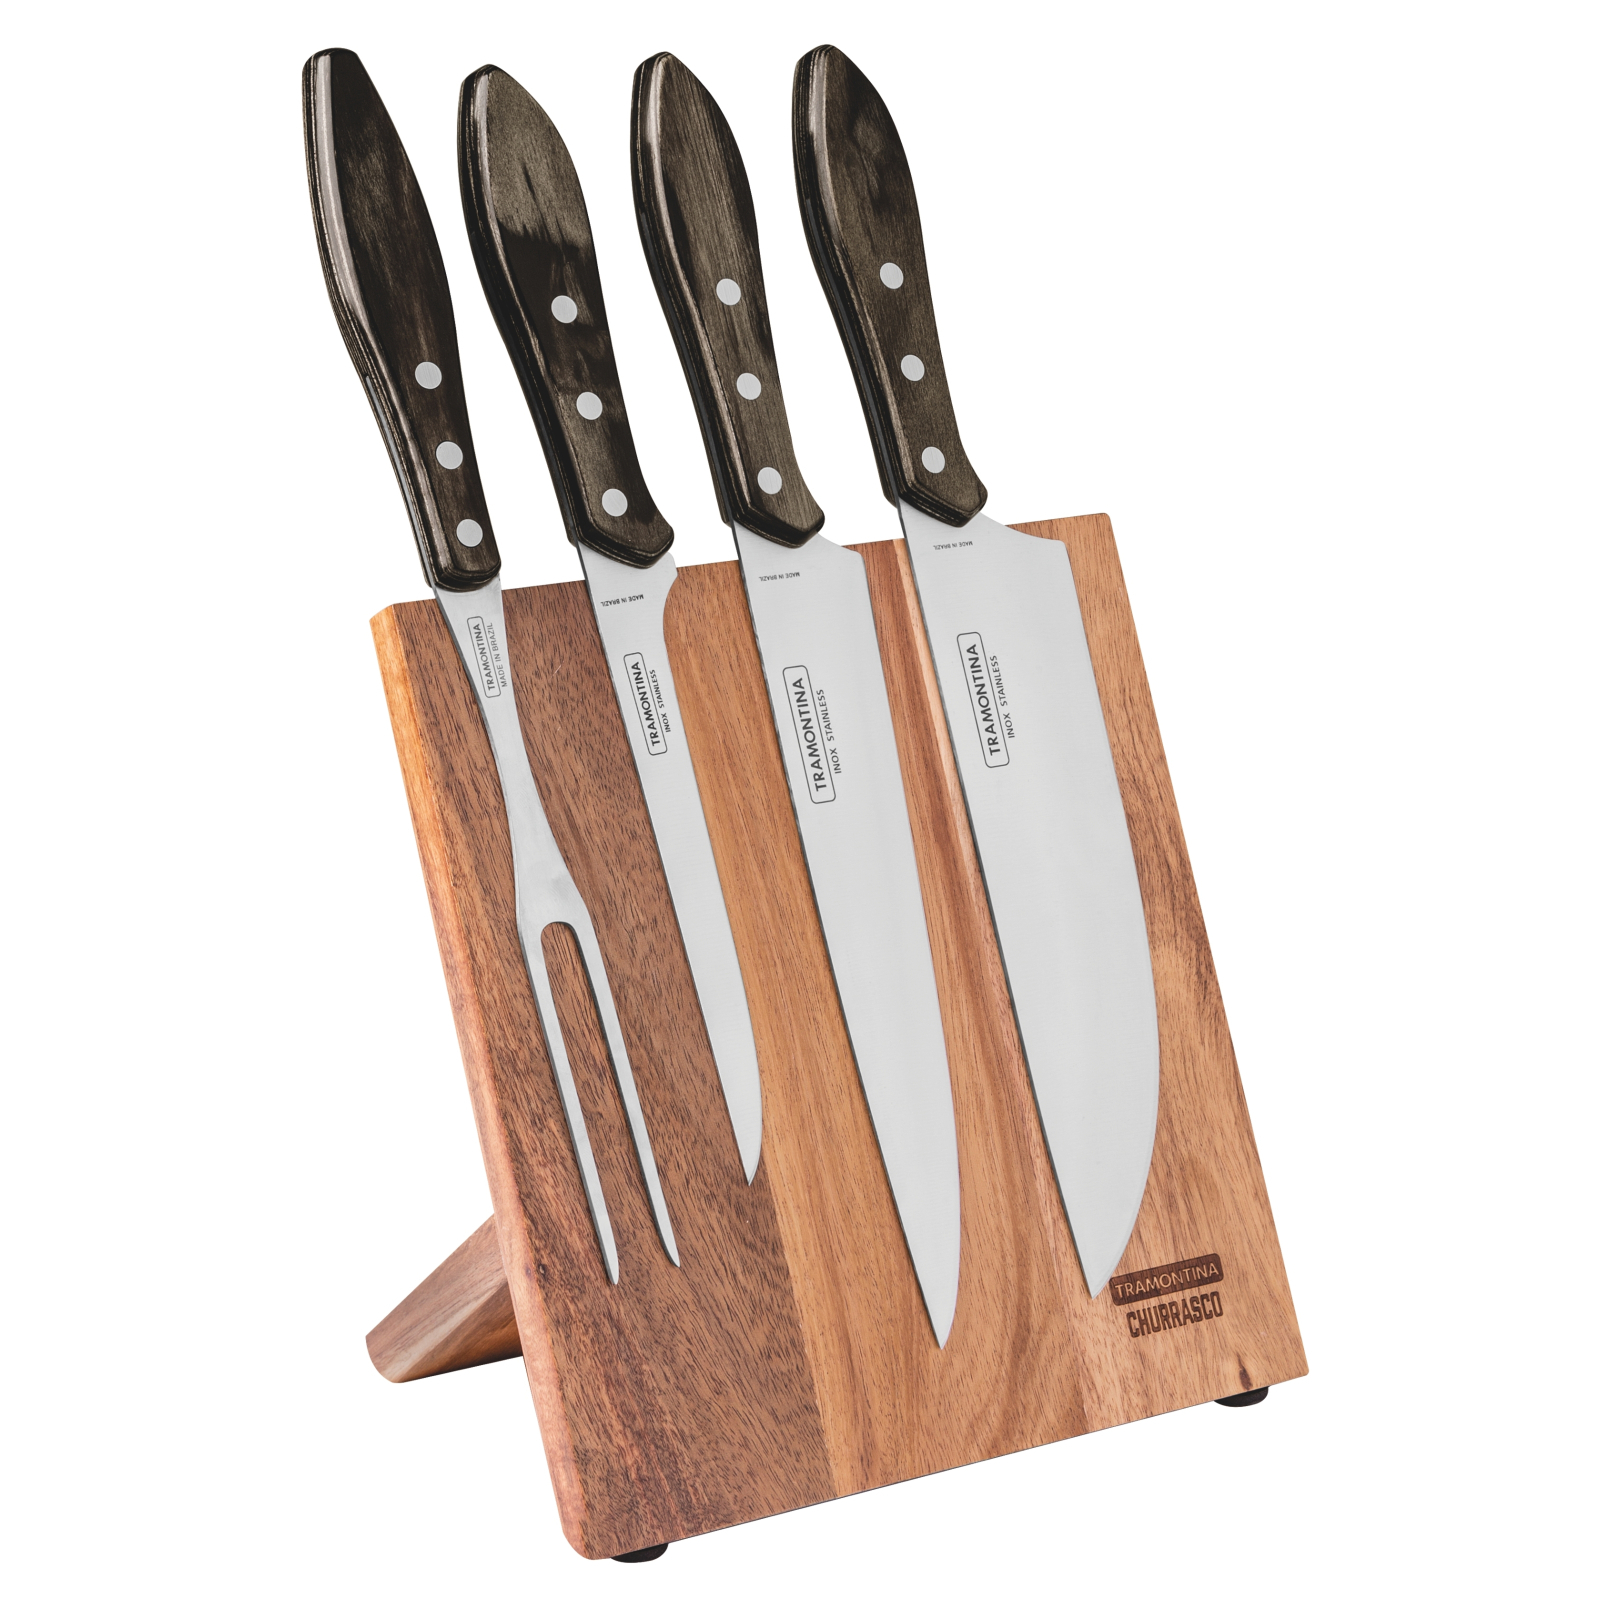 Набор ножей Tramontina Polywood 5 предметів (21198/981)